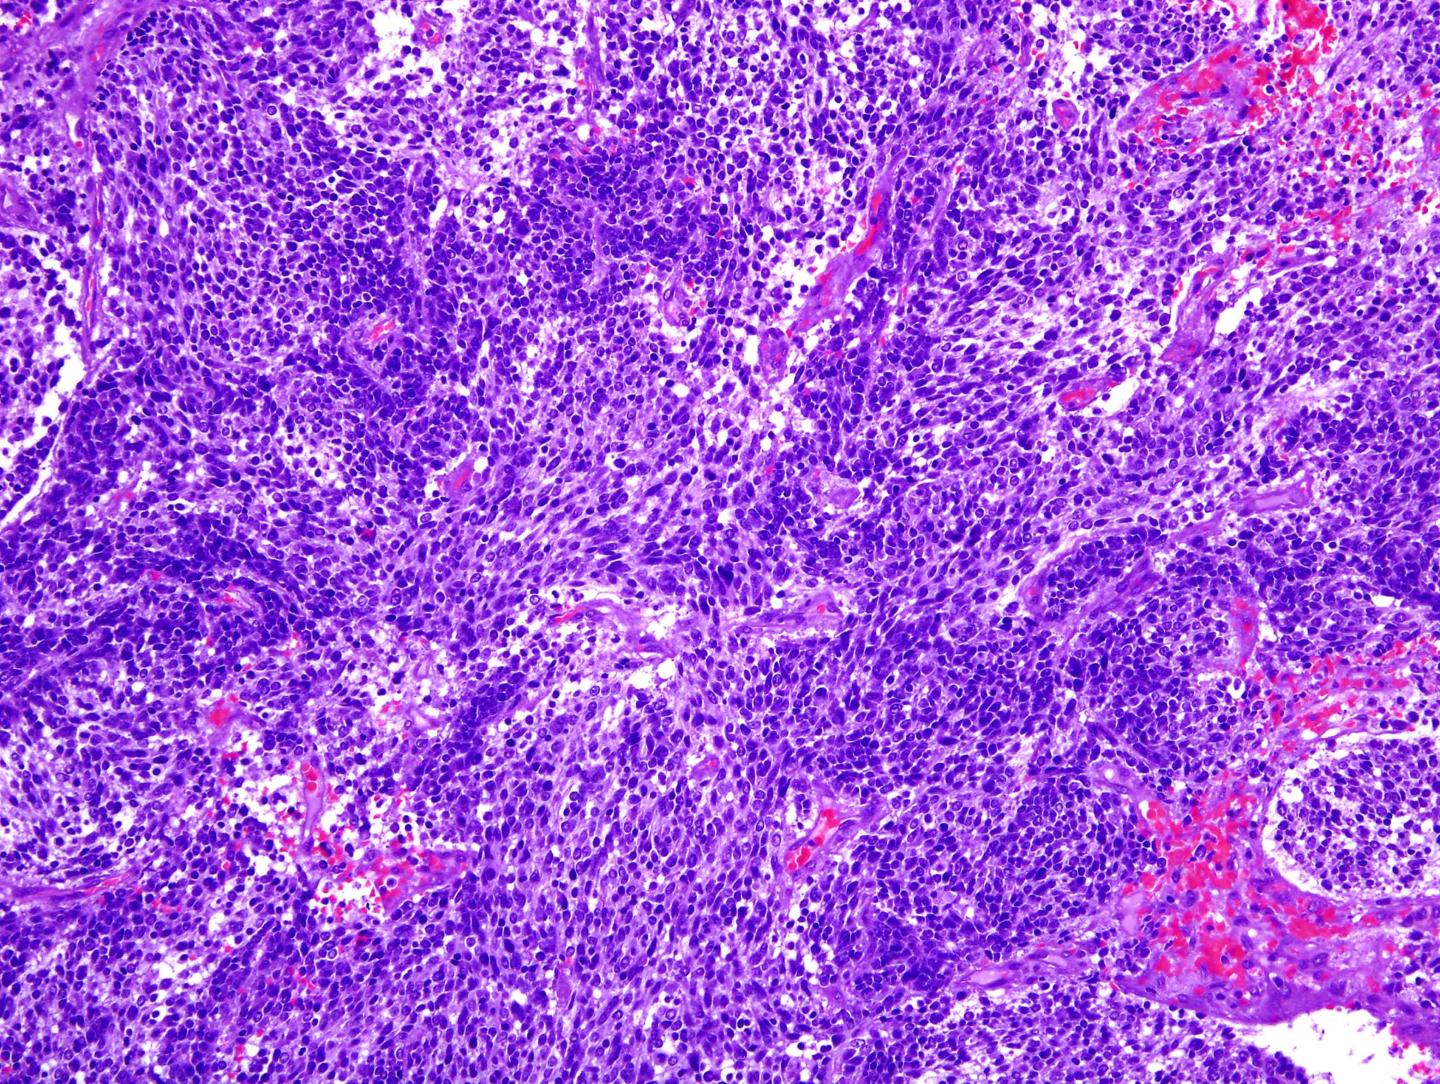 Image of a Glioblastoma, the Most Aggressive Brain Tumor